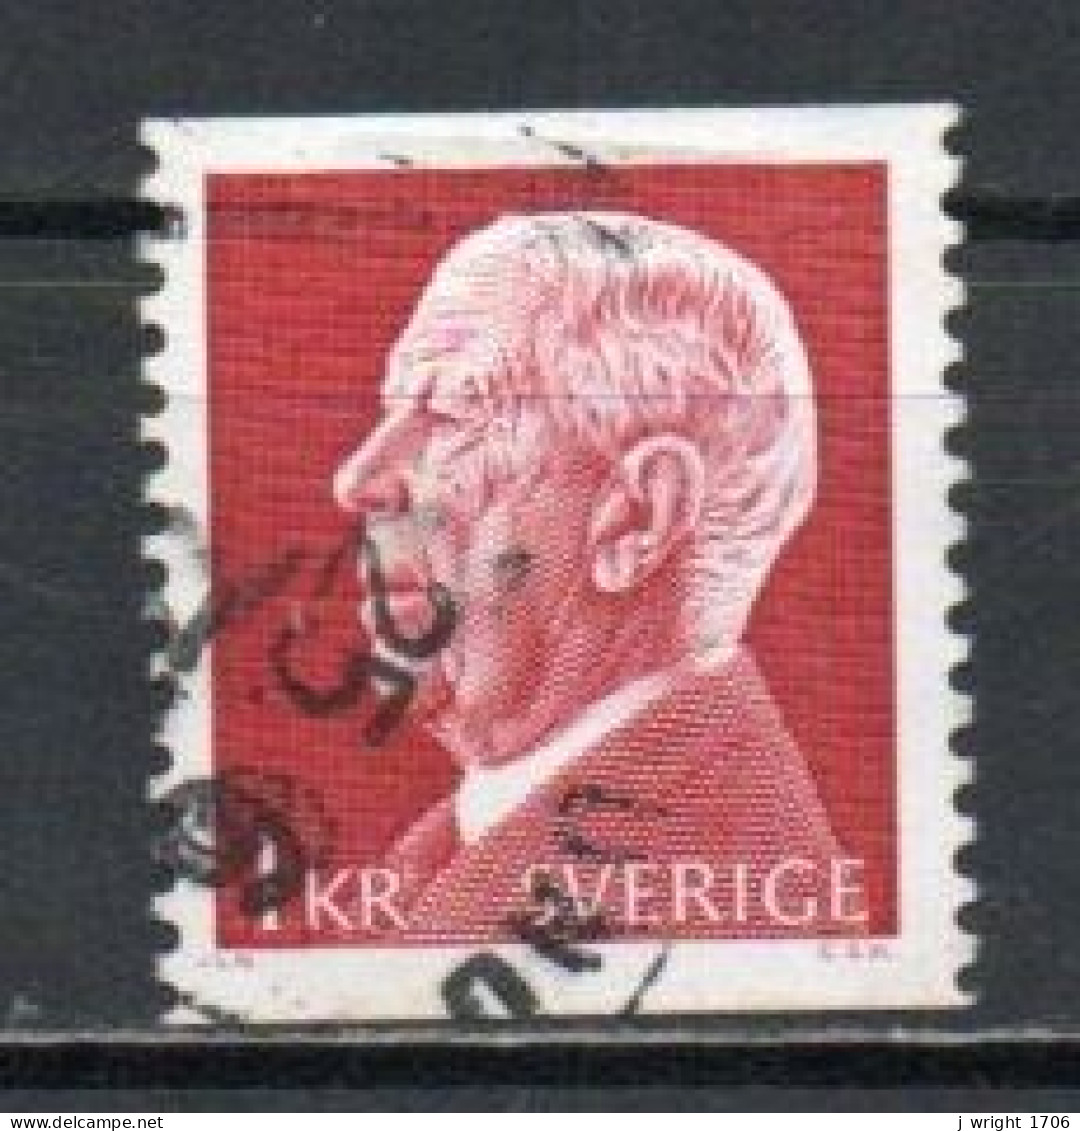 Sweden, 1972, King Gustaf VI Adolf, 1kr/Perf 2 Sides, USED - Gebruikt